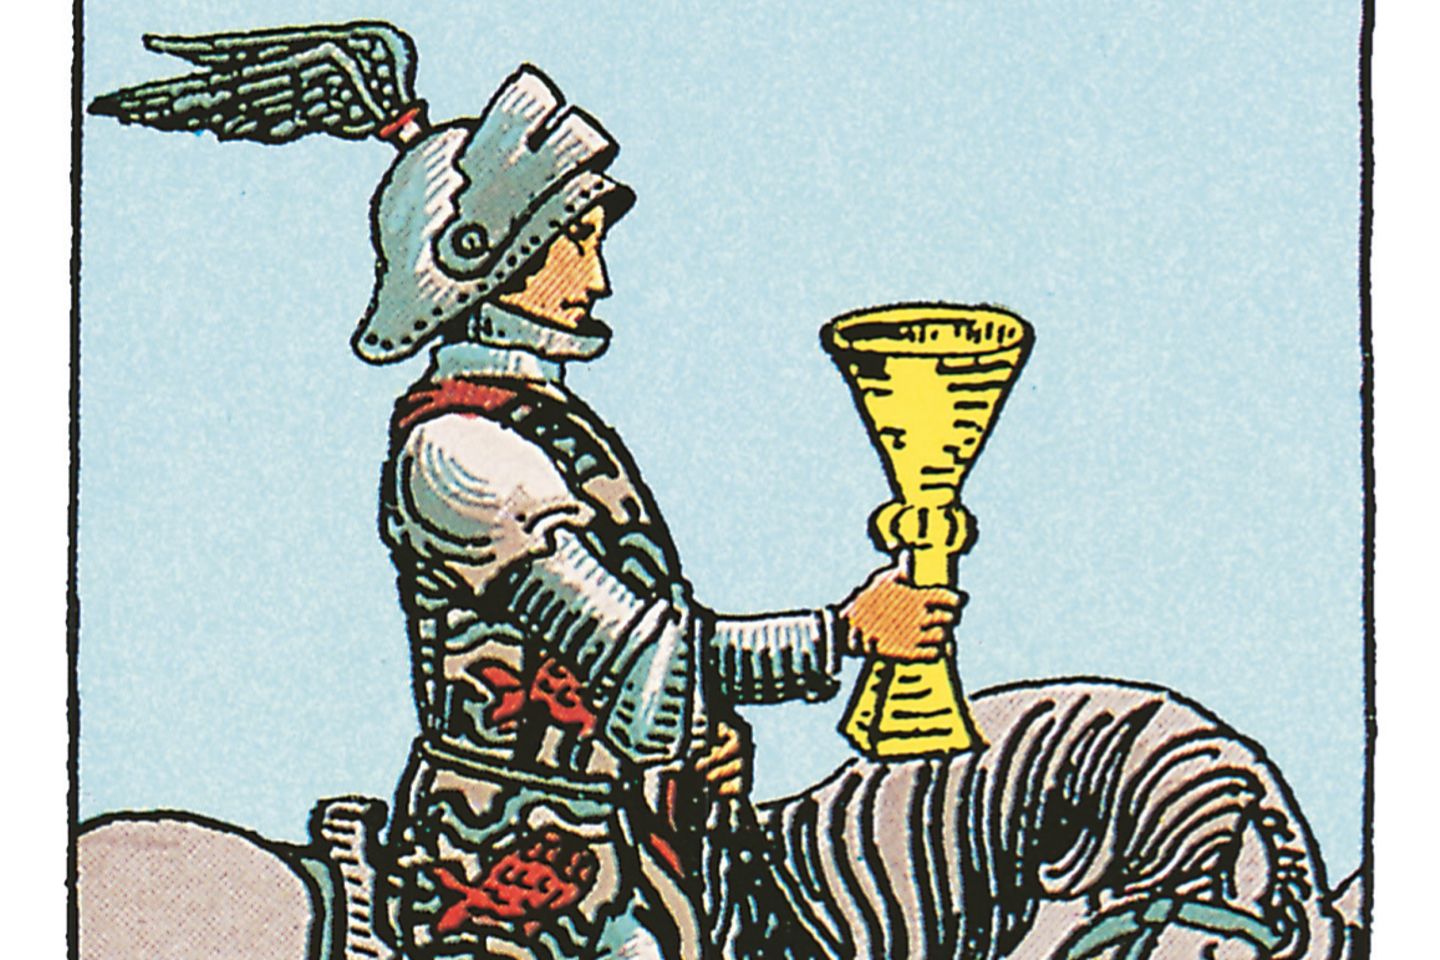 Der Ritter Schwerter - deine Tarotkarte BRIGITTE.de